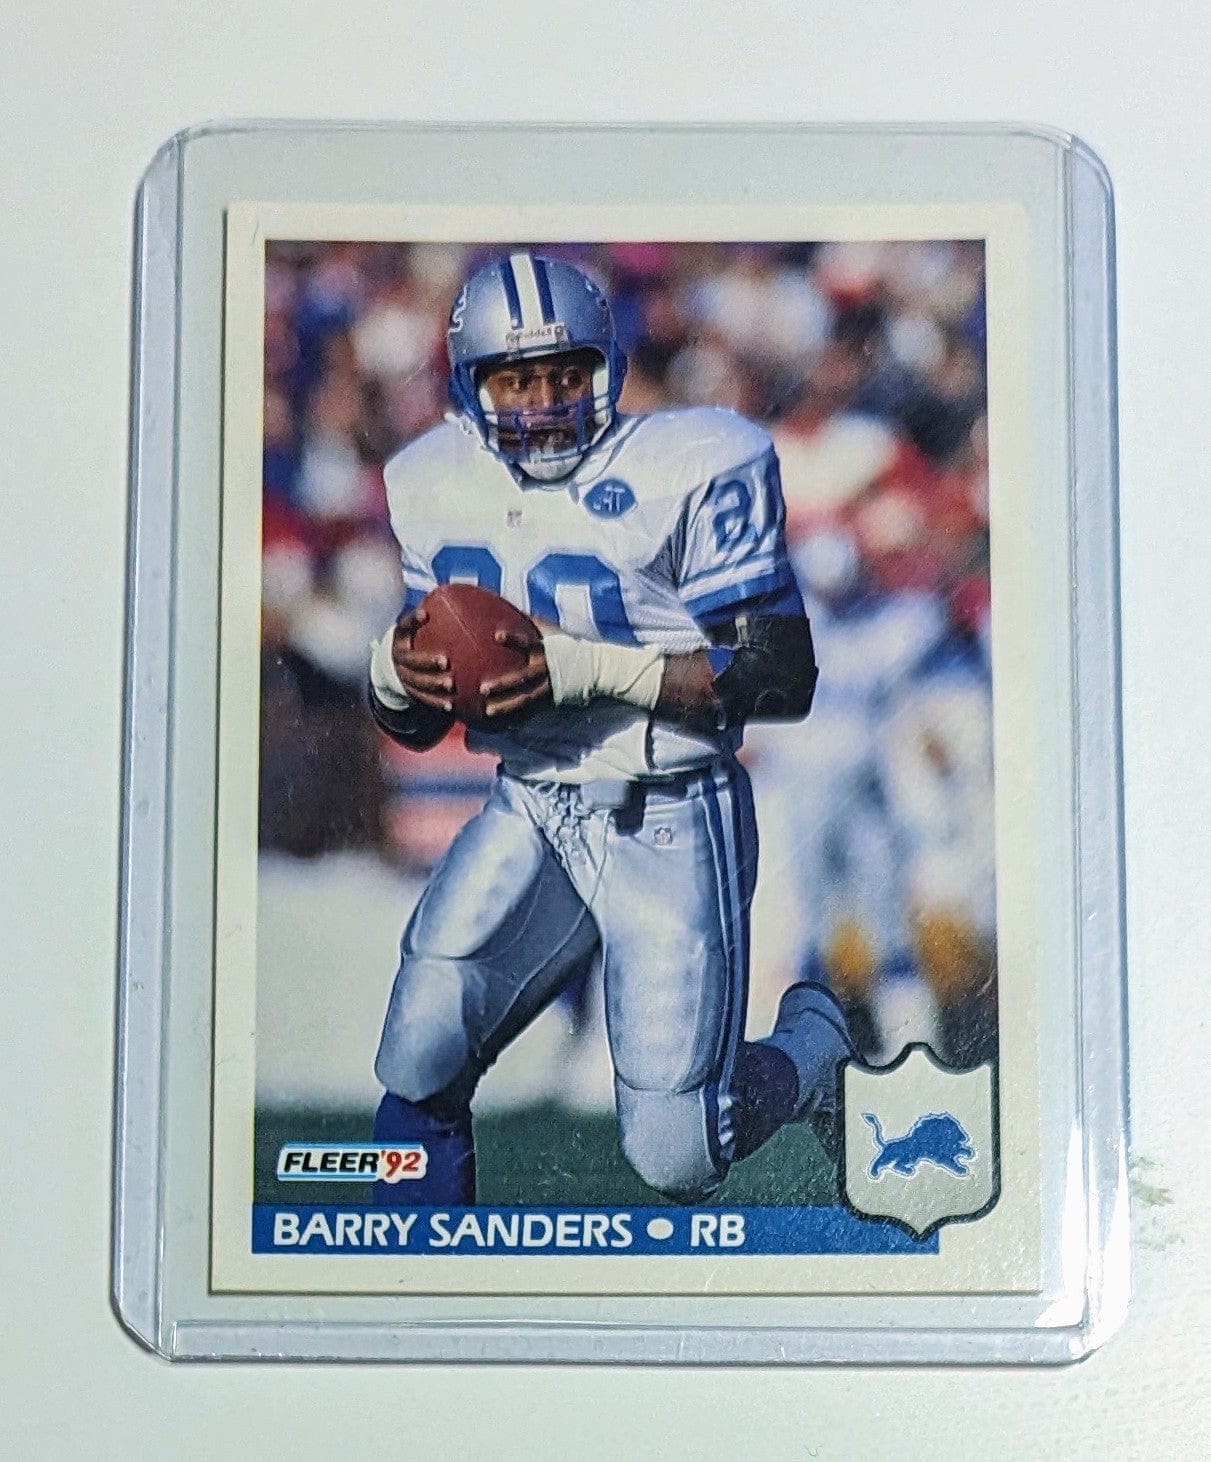 FIINR Football Card 1992 Fleer Barry Sanders Football Card #123 - Mint Condition